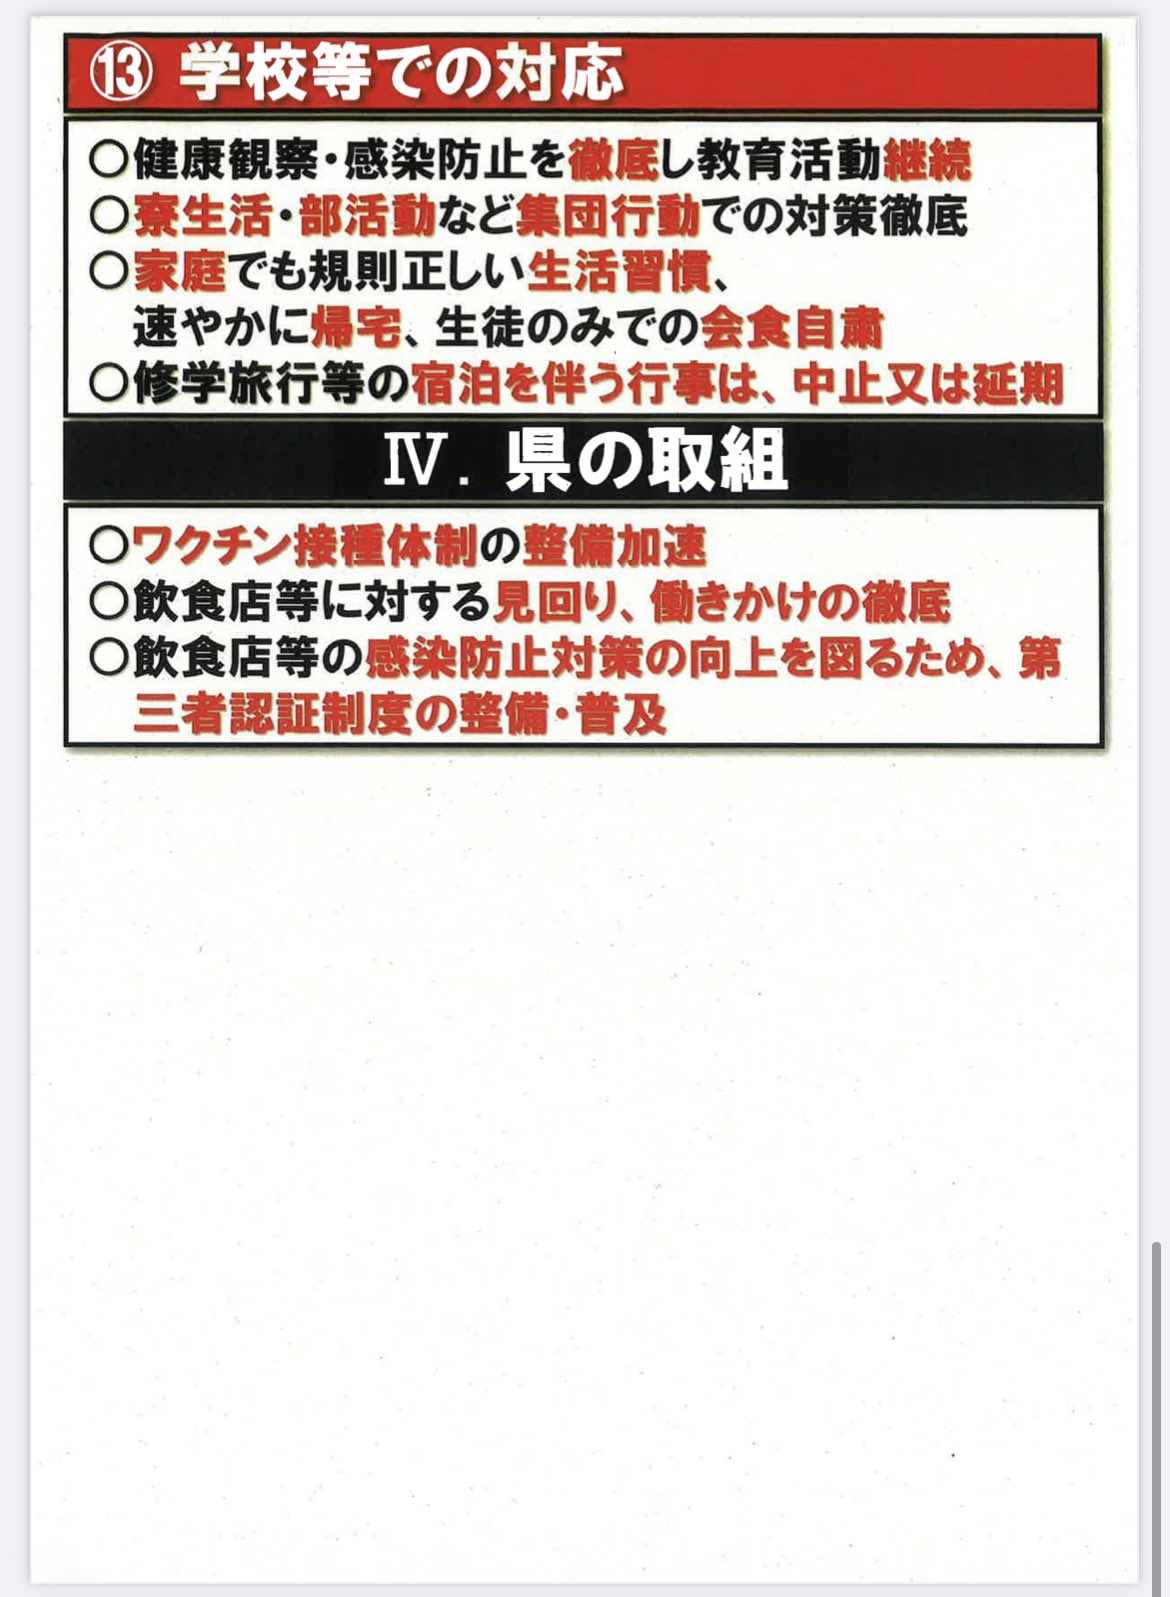 緊急事態宣言に関する愛知県からのメッセージ